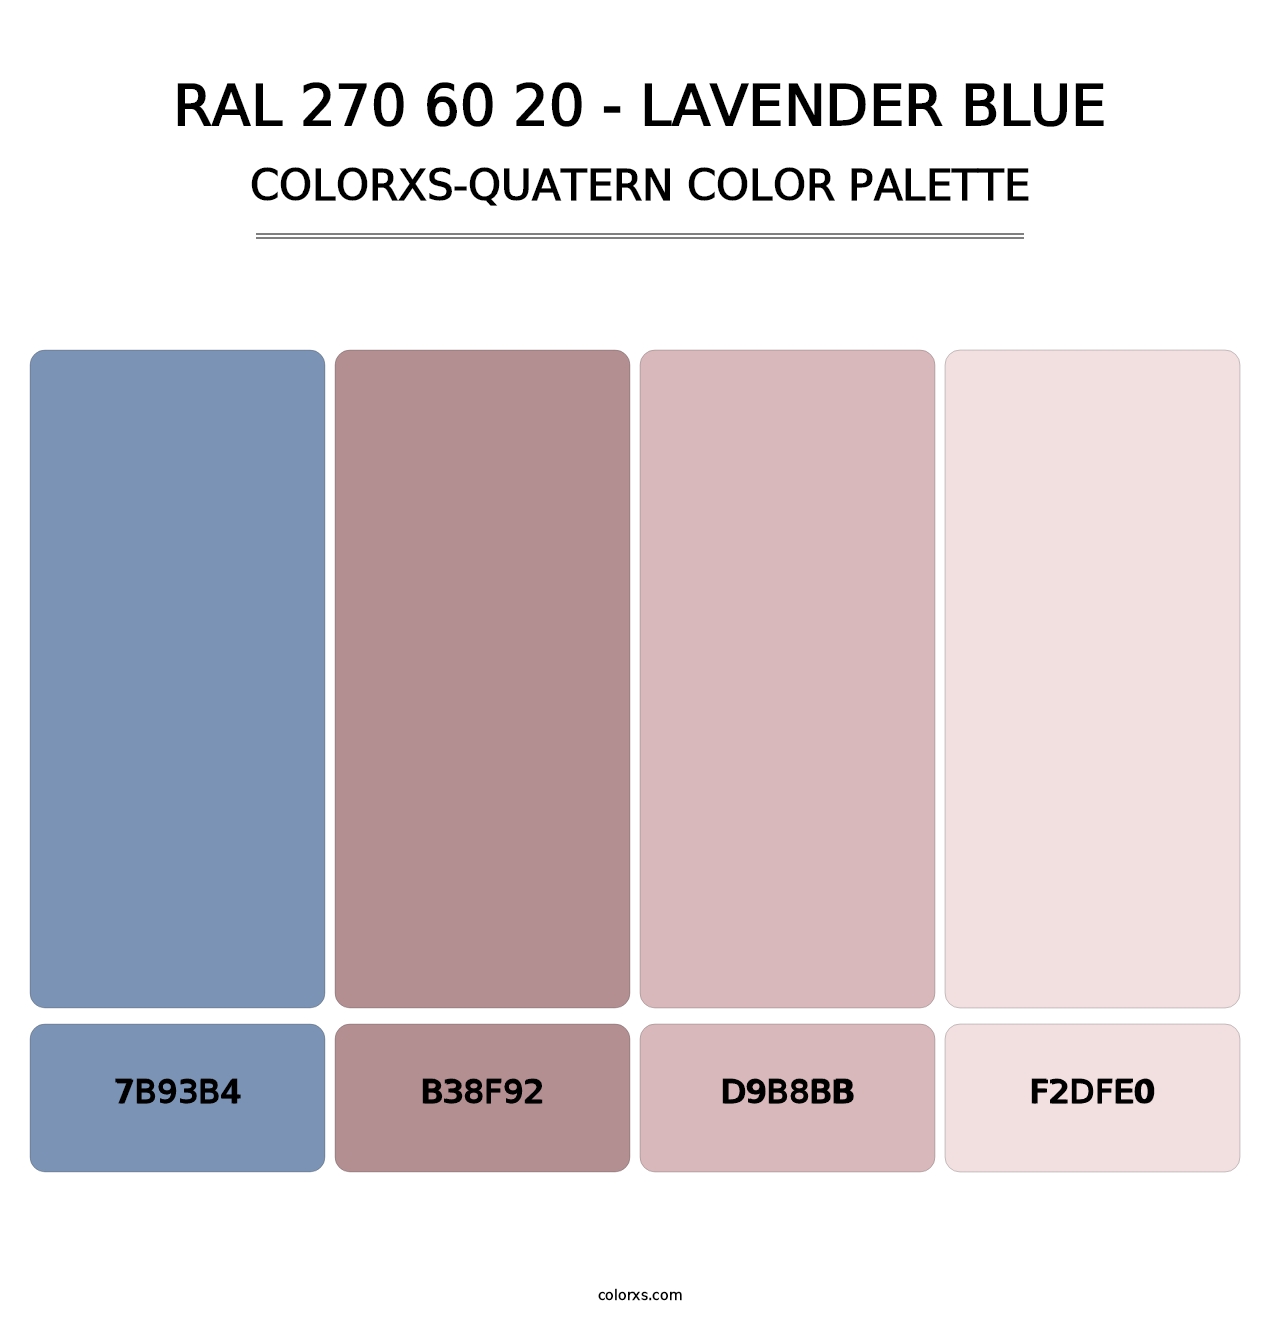 RAL 270 60 20 - Lavender Blue - Colorxs Quatern Palette